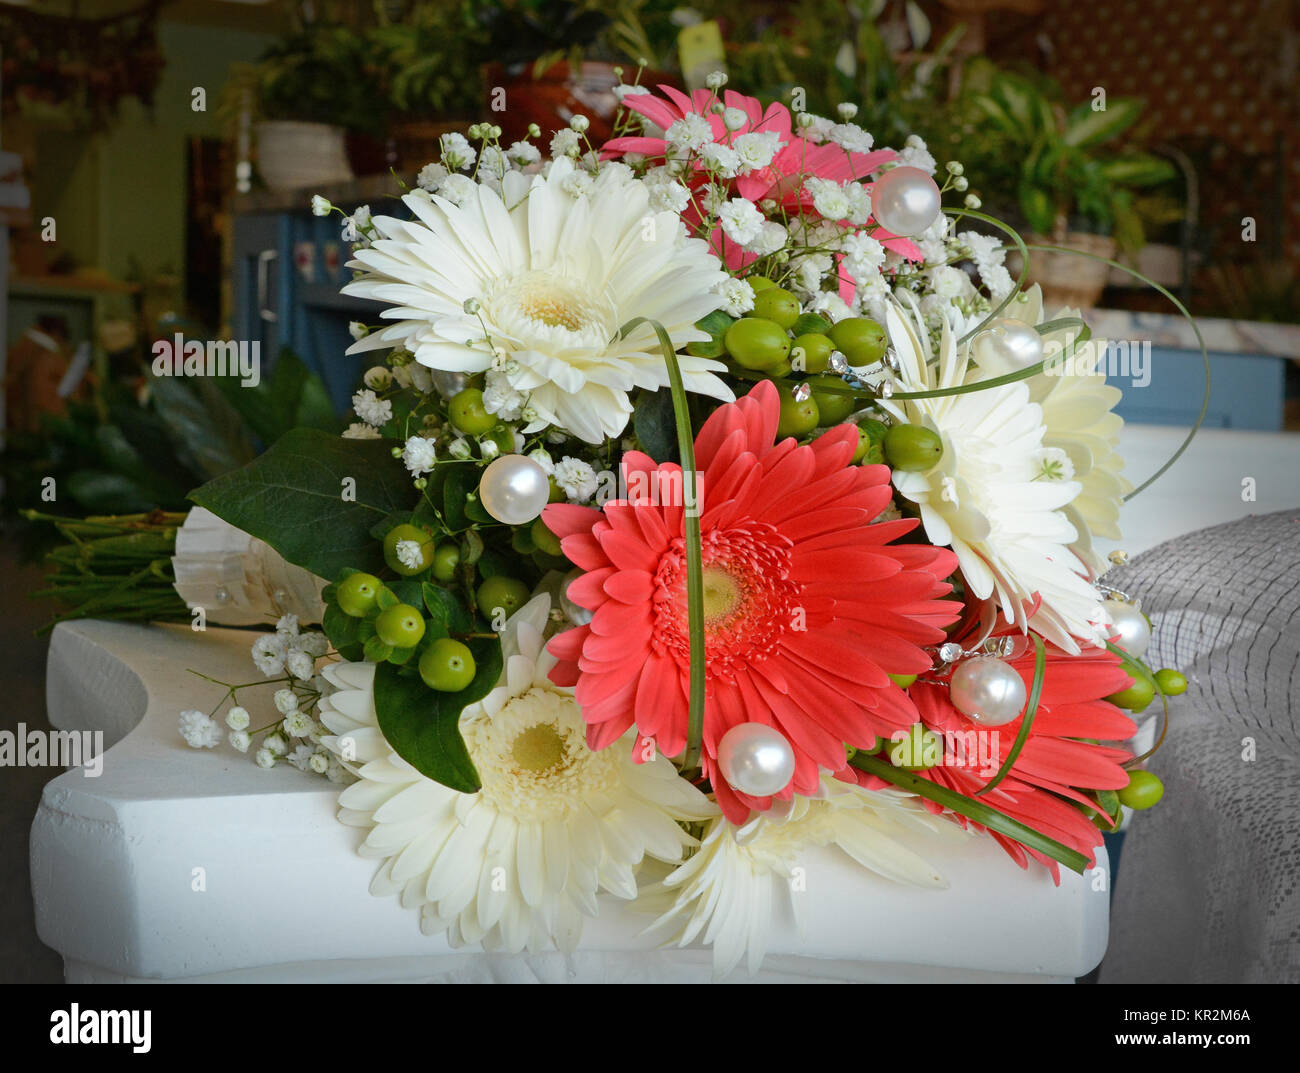 Foto von einem festlichen, Korallen und weiße Braut Blumenstrauß mit gerbera Daisies, Hortensie, Hypericum Beeren, Atem Baby's, Gras, Loops und großen Spaß Perlen. Stockfoto